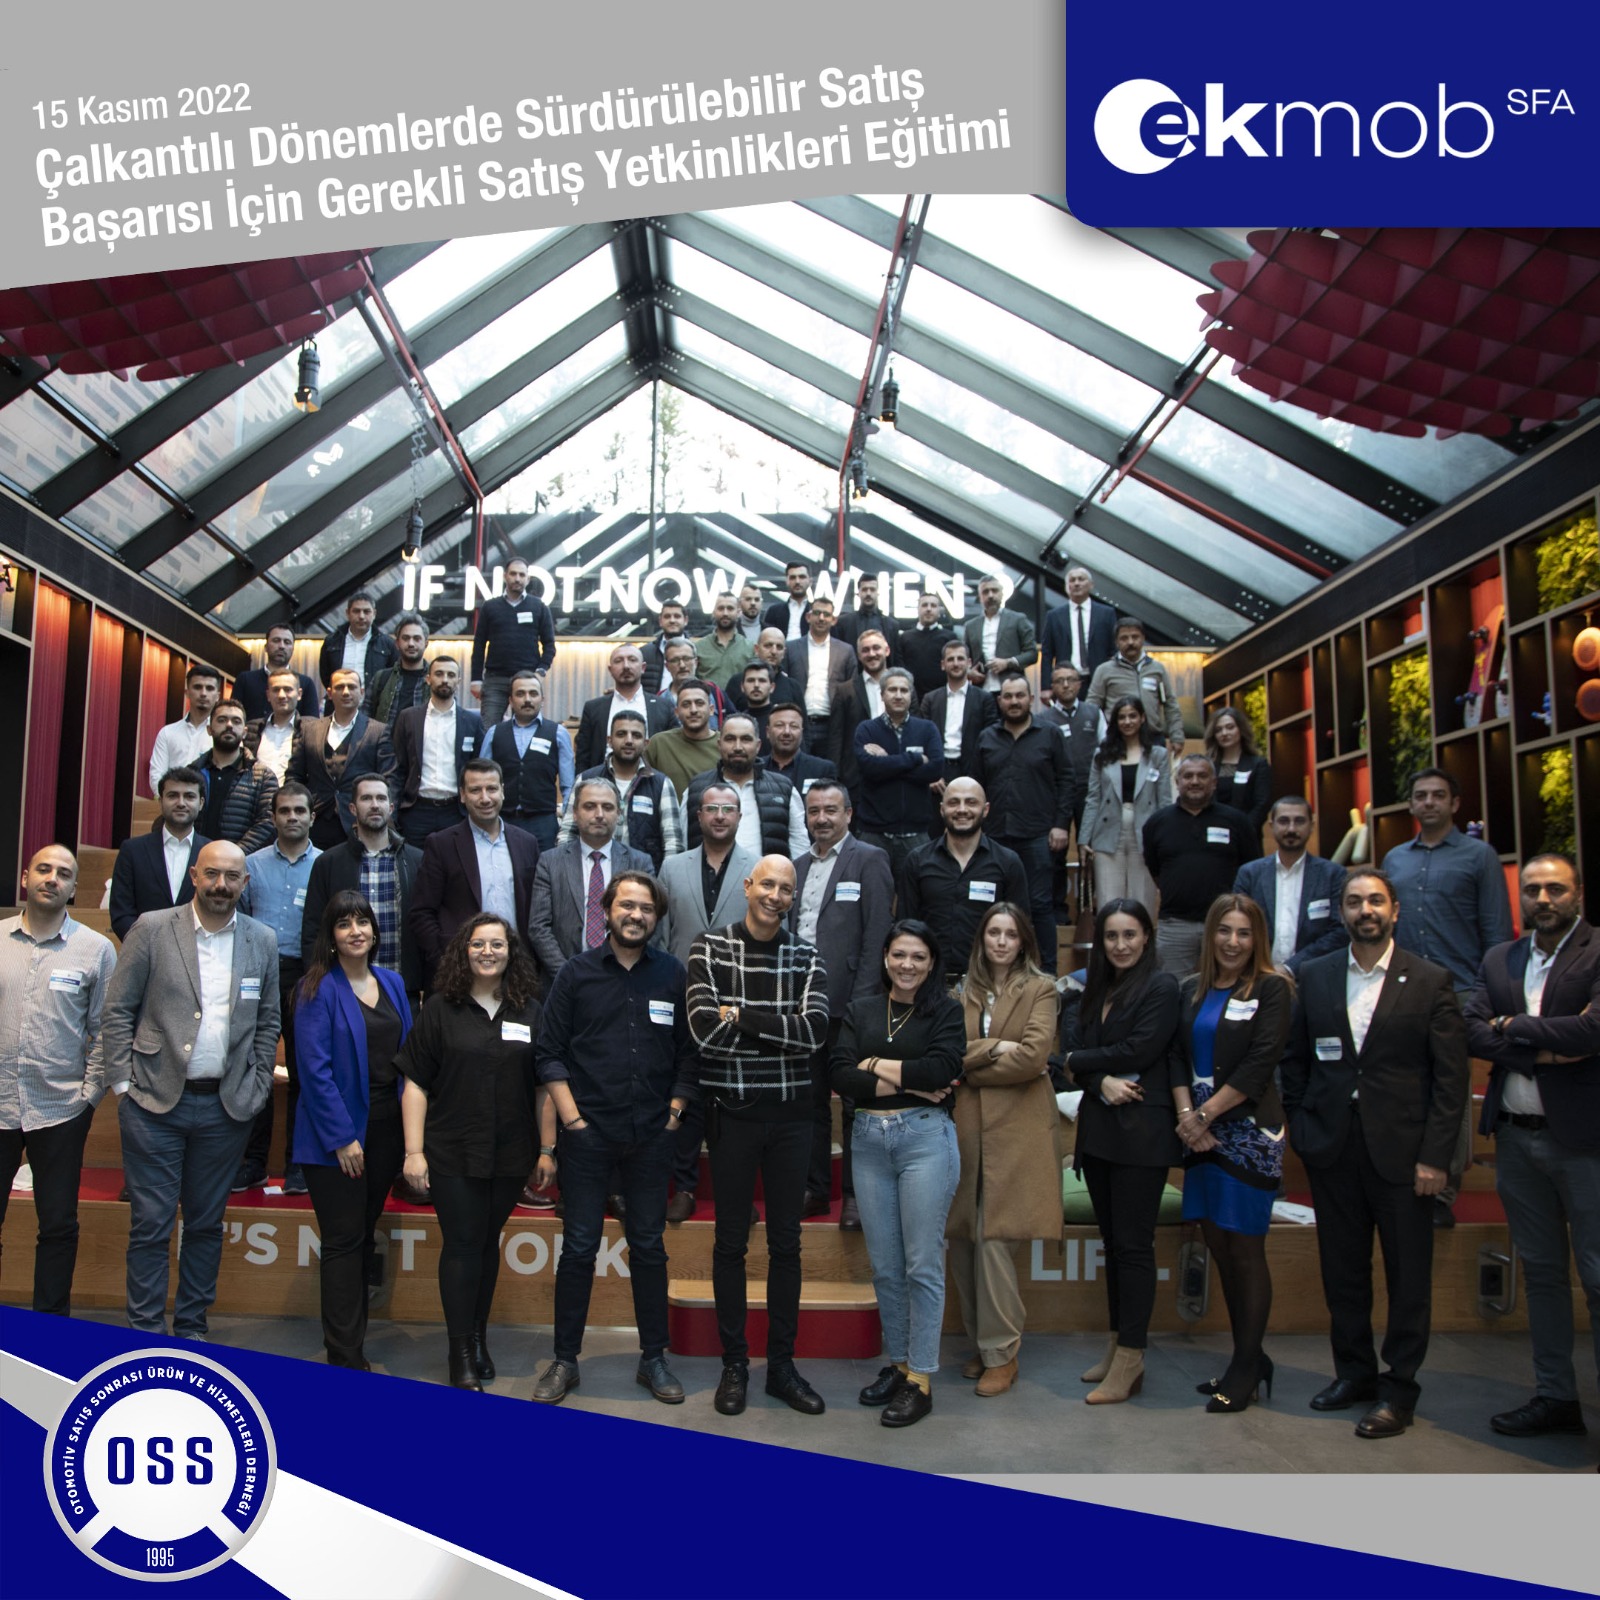 OSS & EKMOB- Çalkantılı Dönemlerde Sürdürülebilir Satış Başarısı İçin Gerekli Satış Yetkinlikleri Eğitimi